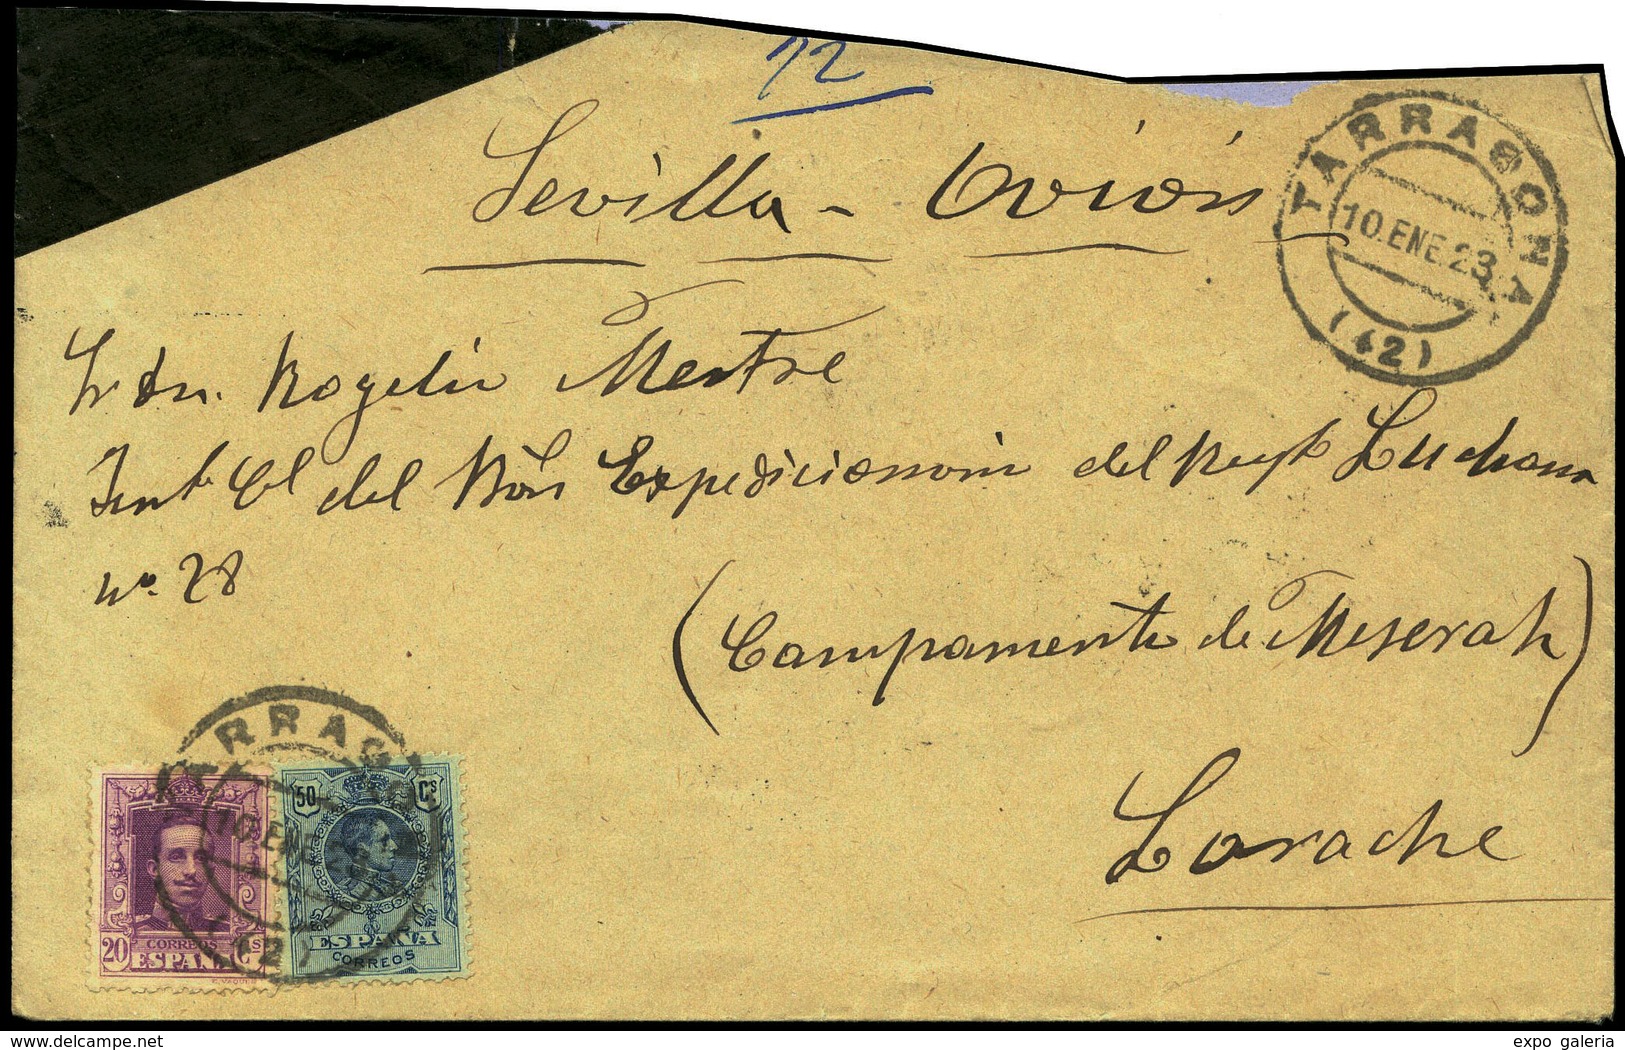 Ed.  277+316 - 1923. Carta Cda Correo Aereo De Tarragona Al Frente En Larache. - Nuevos